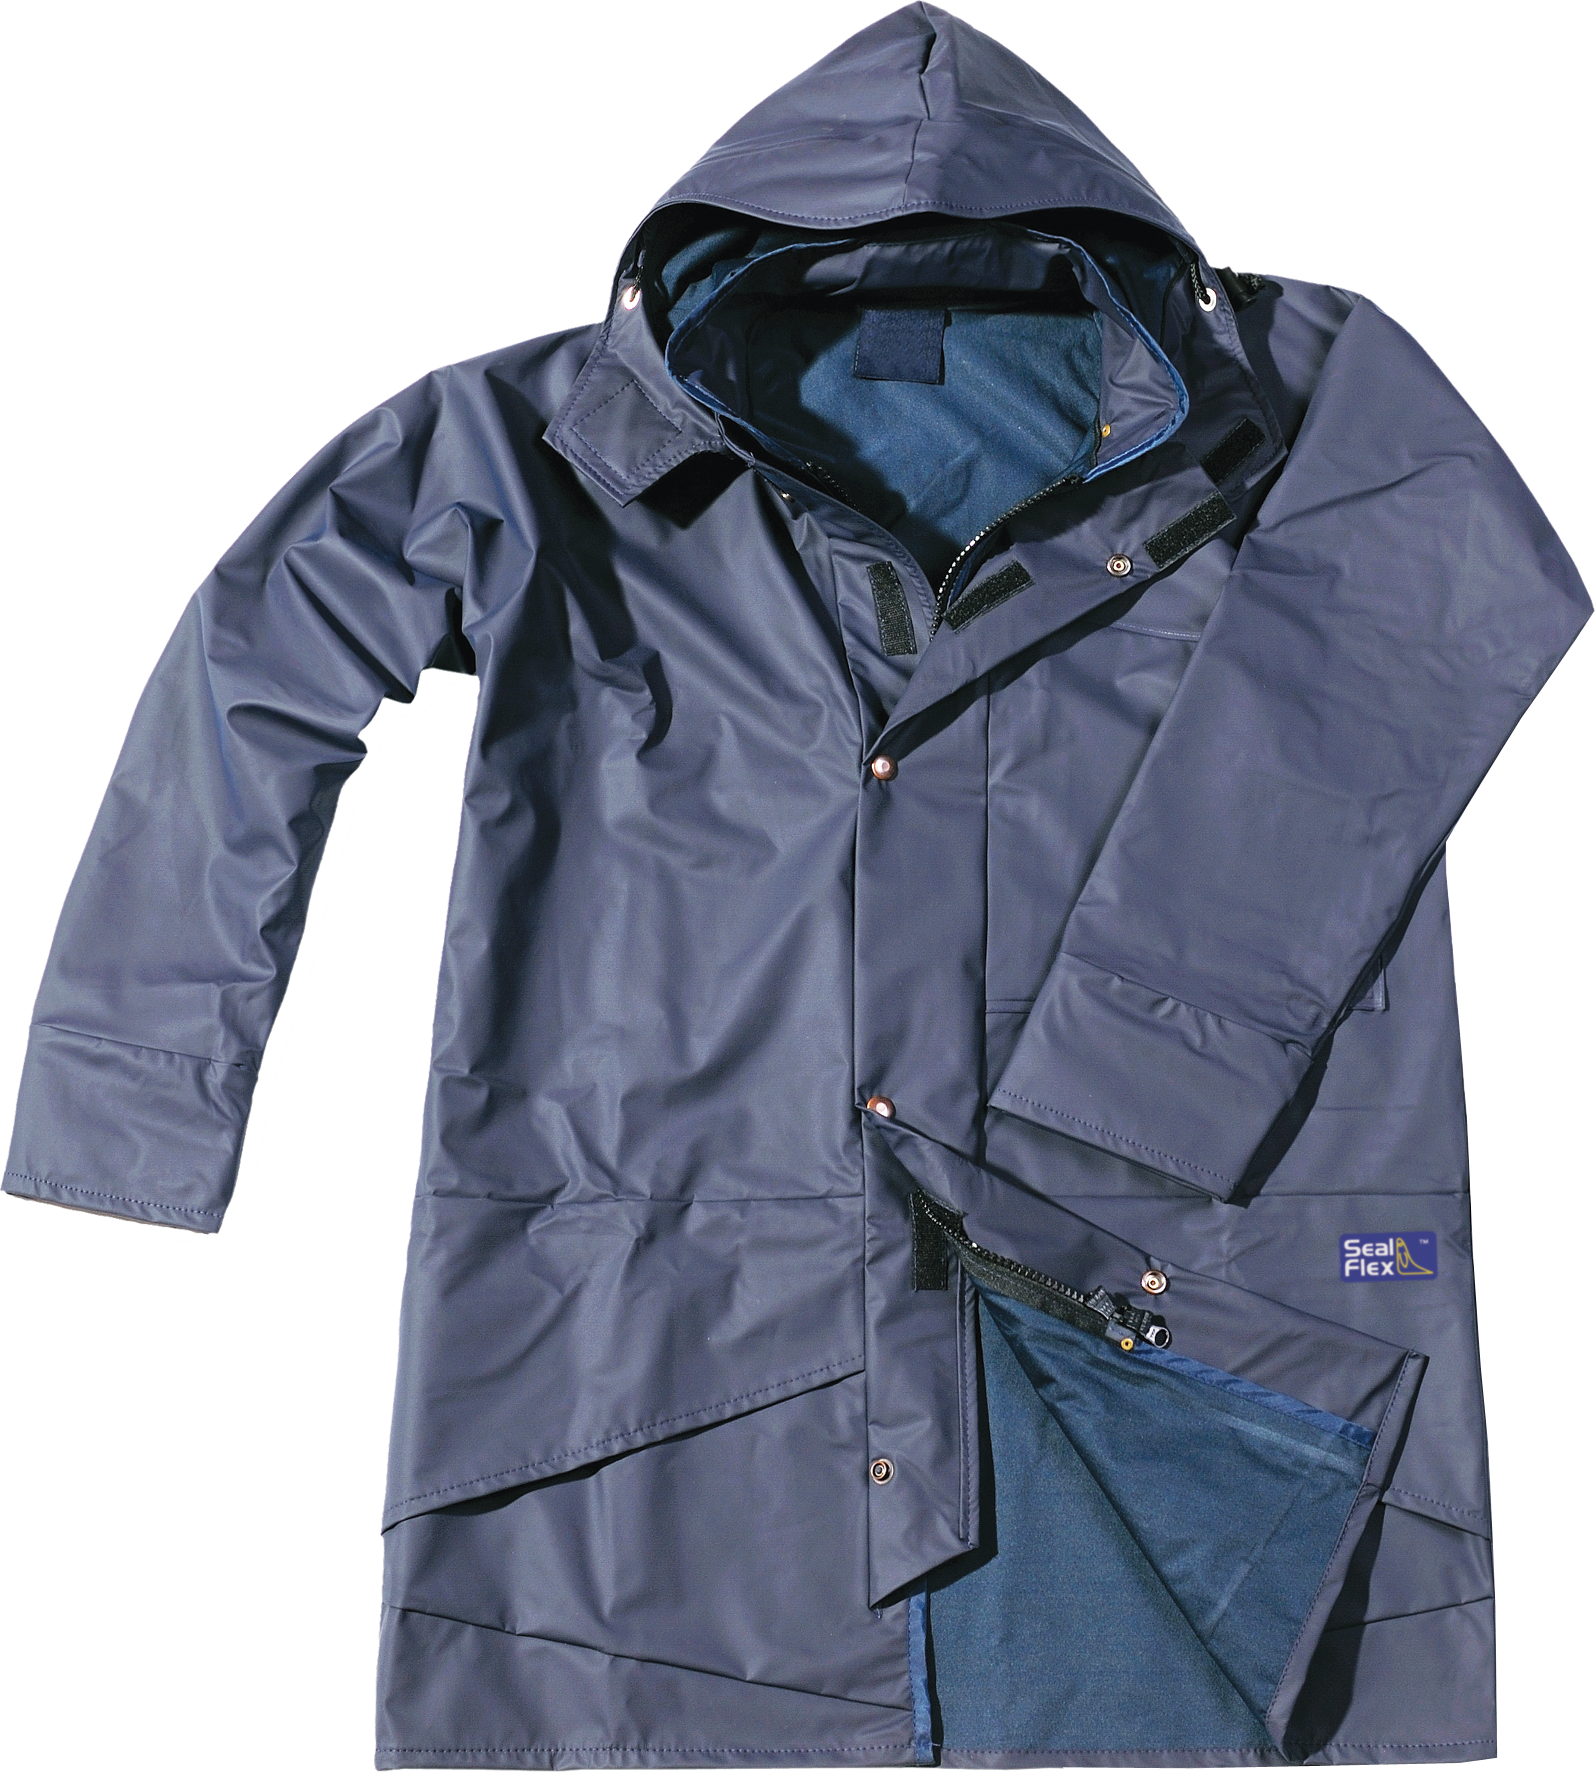 Raincoat PNG HD - 137235